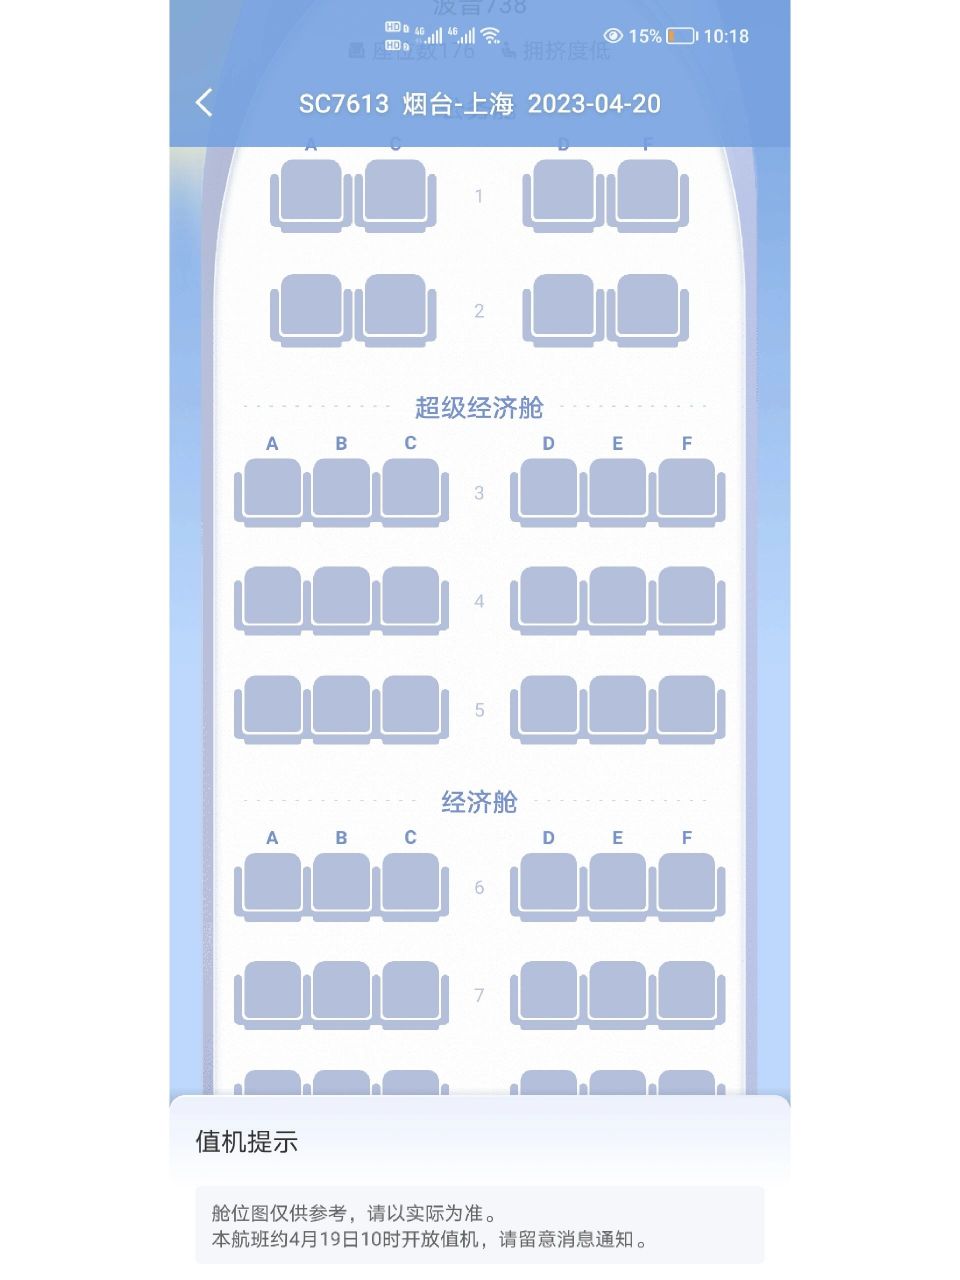 737800机型座位图图片